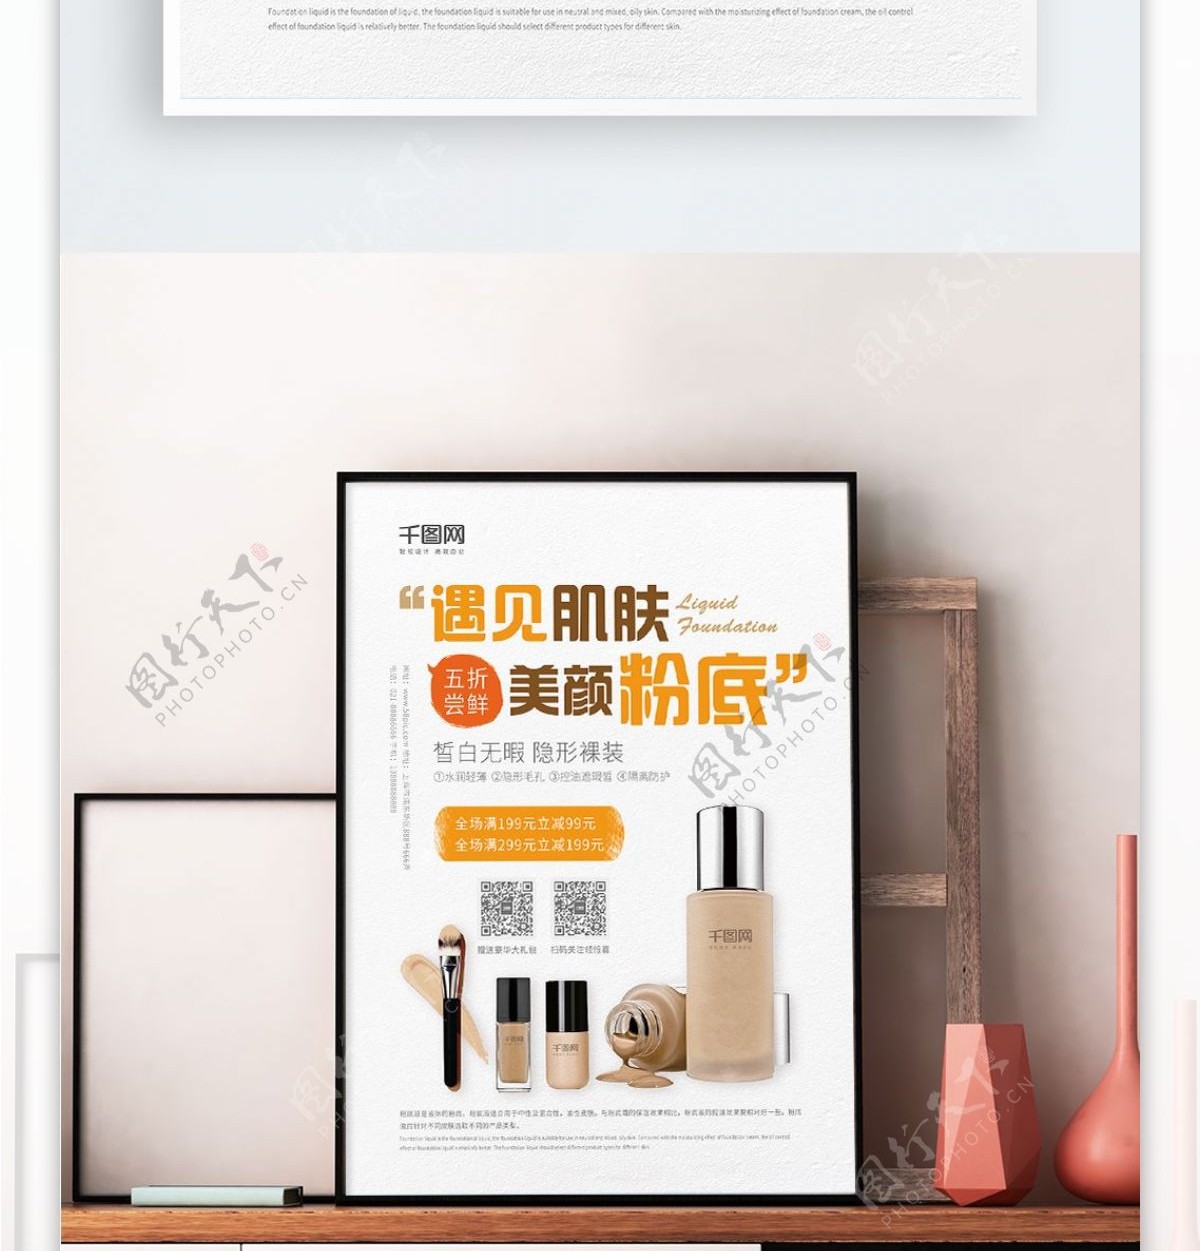 创意海报极简化妆品彩妆粉底液活动促销海报